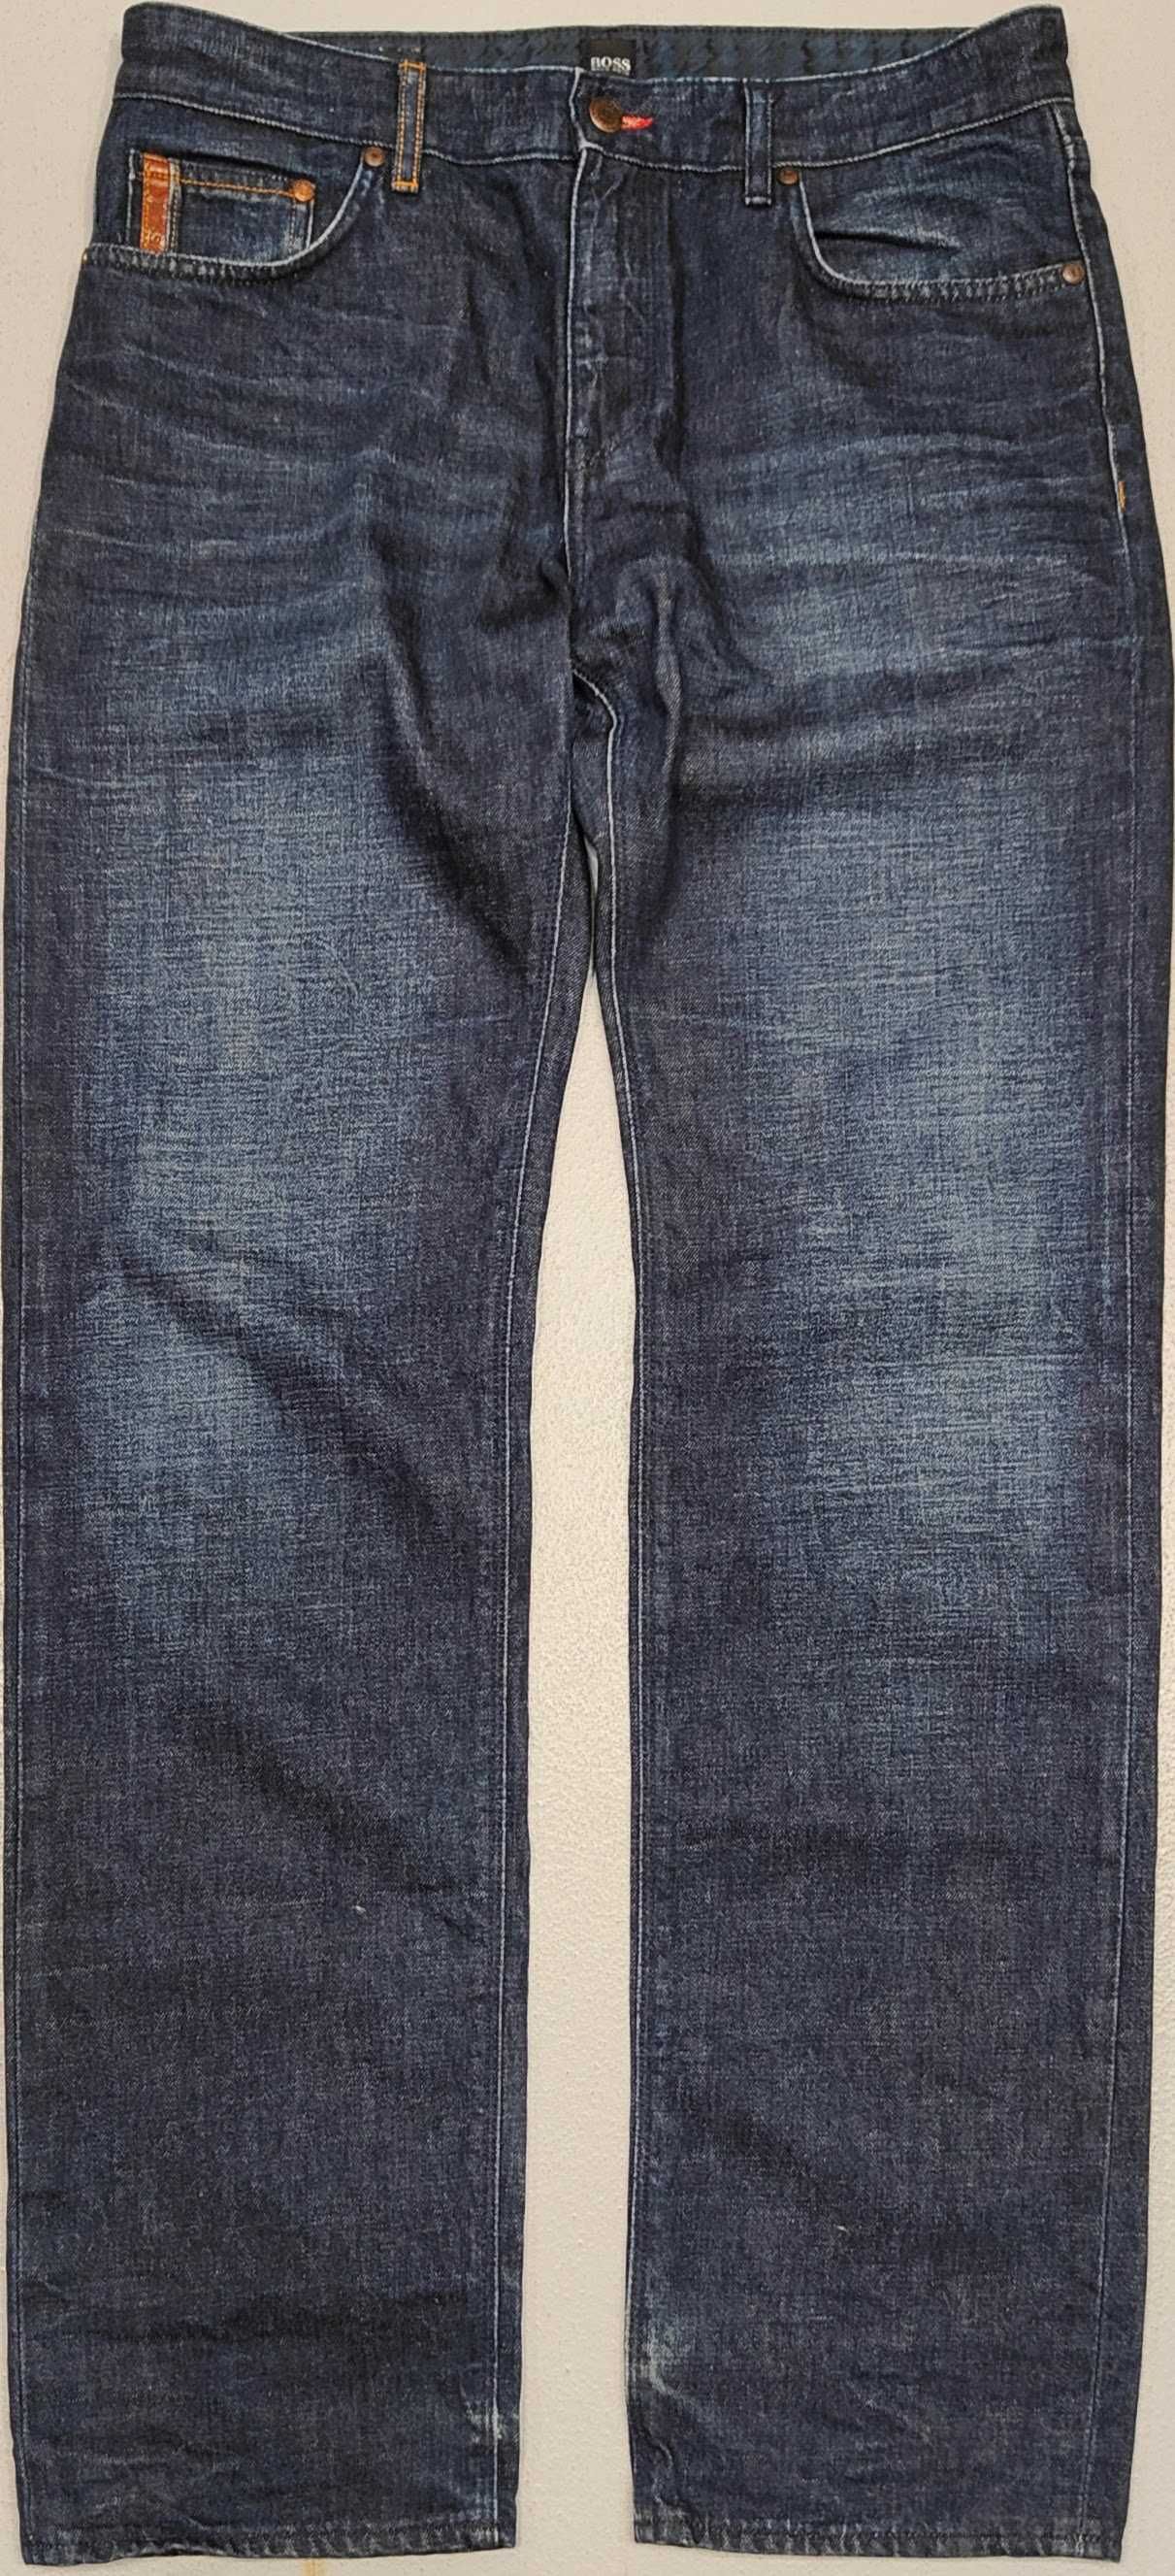 Wr) BOSS HUGO BOSS otyginalne spodnie jeansowe Roz.34/34